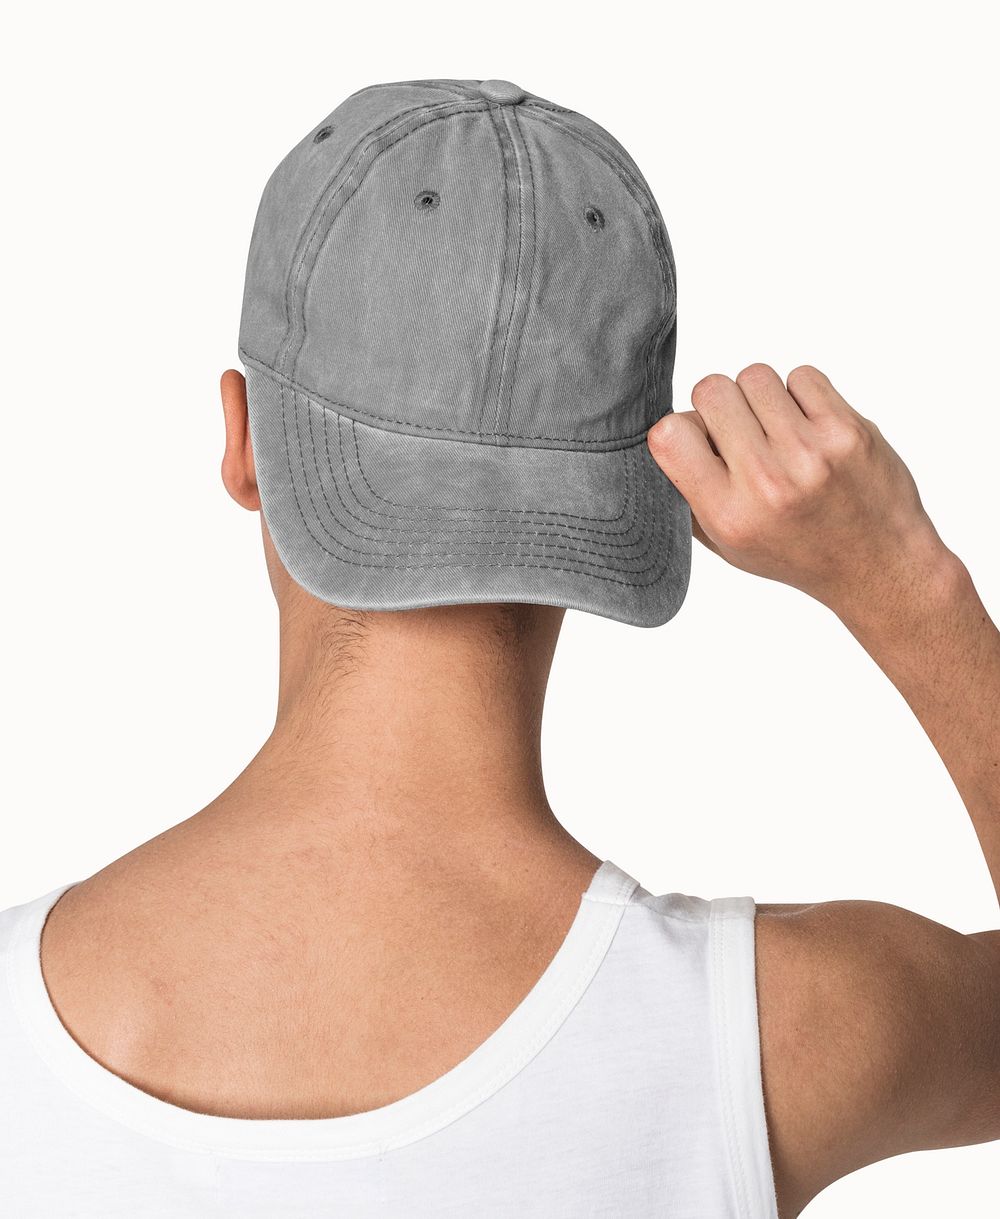 Gray cap mockup psd streetwear shoot